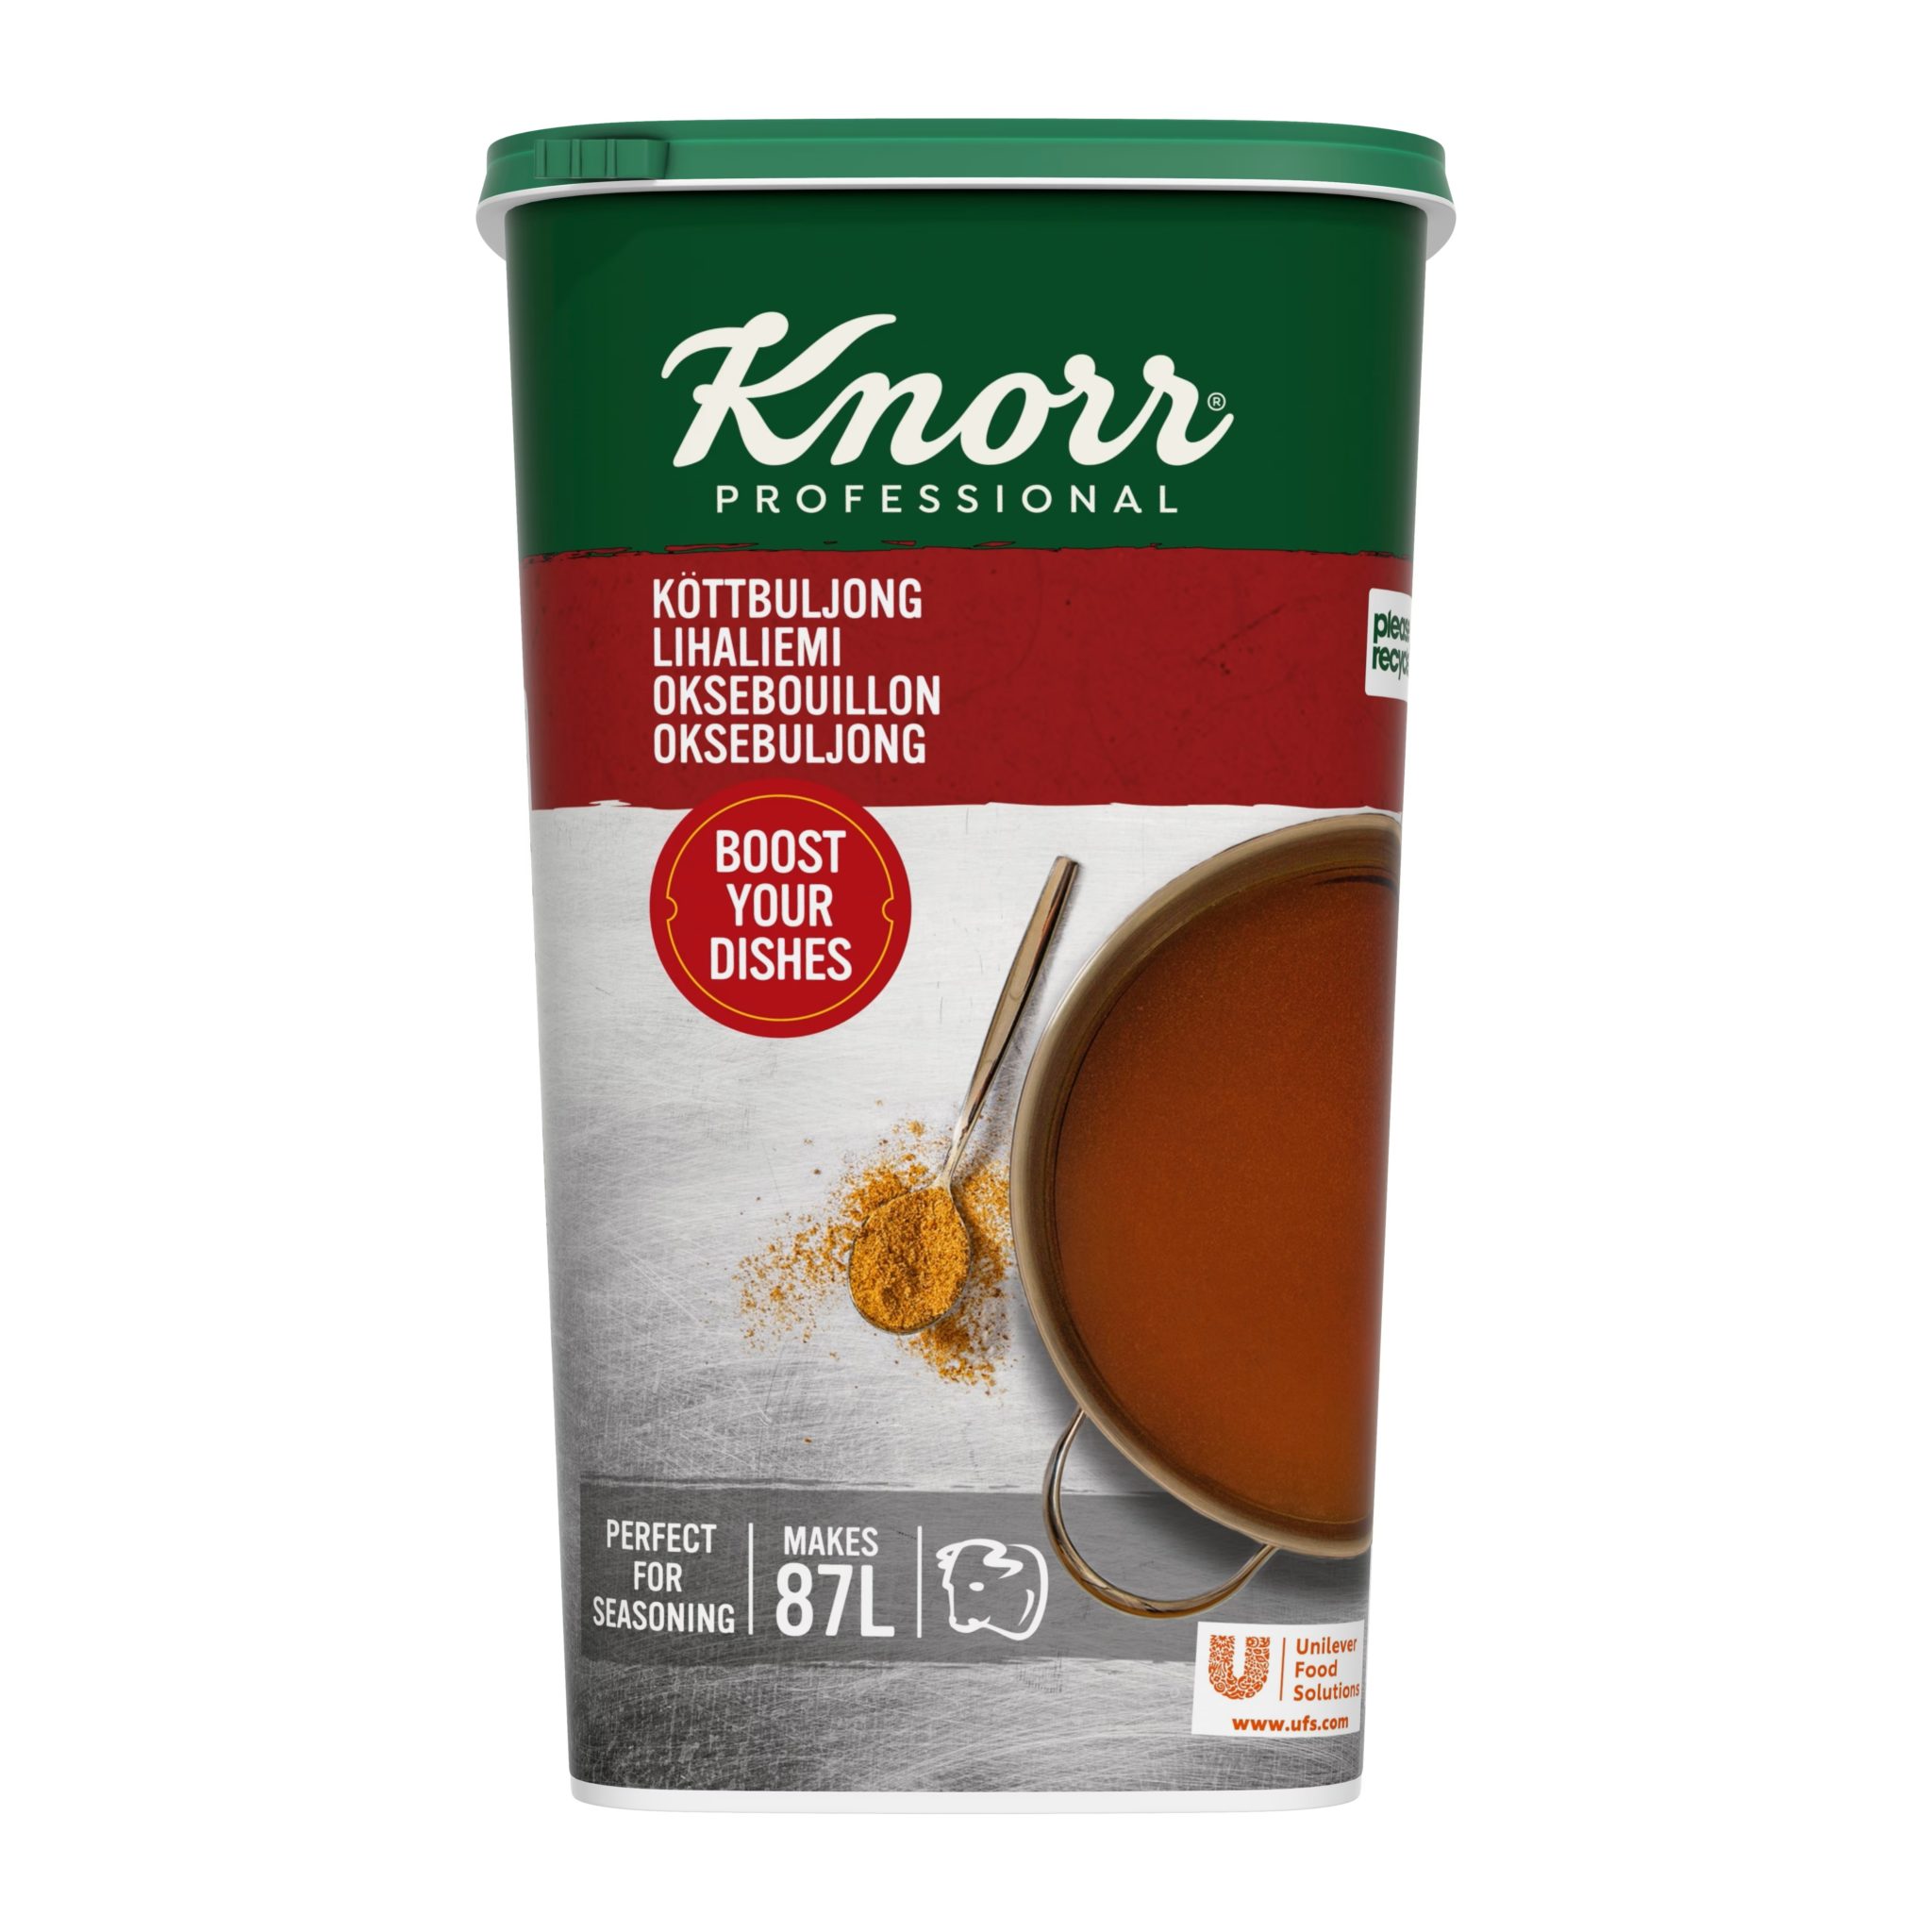 Knorr Nautakraftur þurr 1,3kg (3)